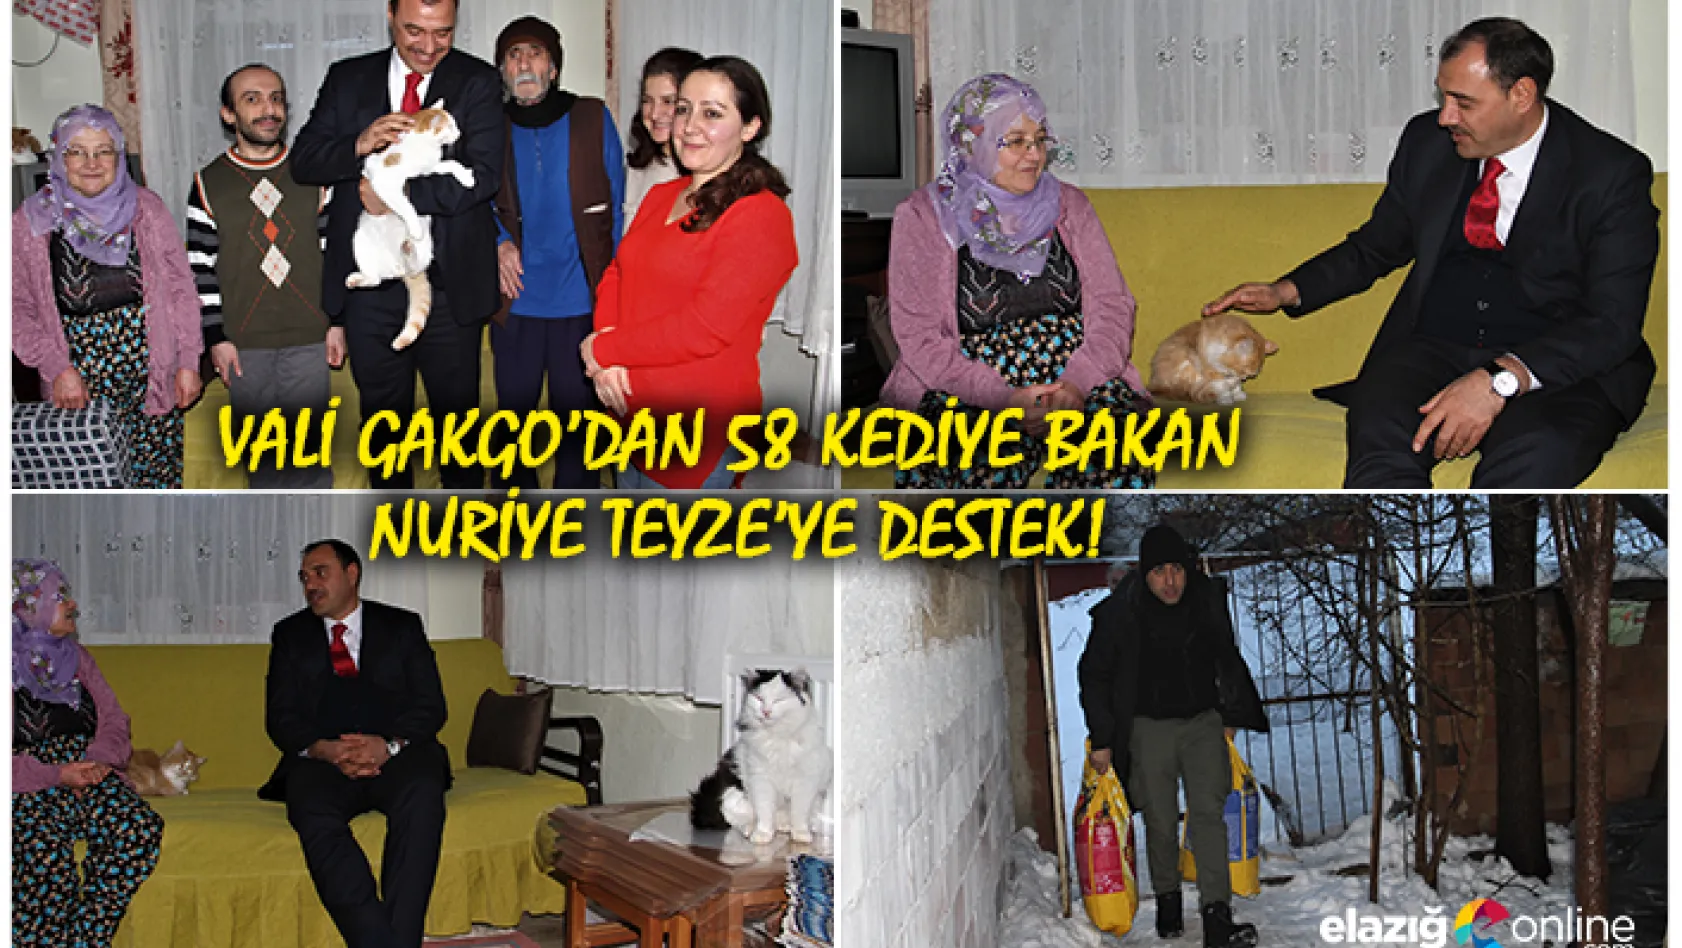 Evinde 58 kediye bakan Nuriye teyzeye, Vali Kaldırım'dan destek